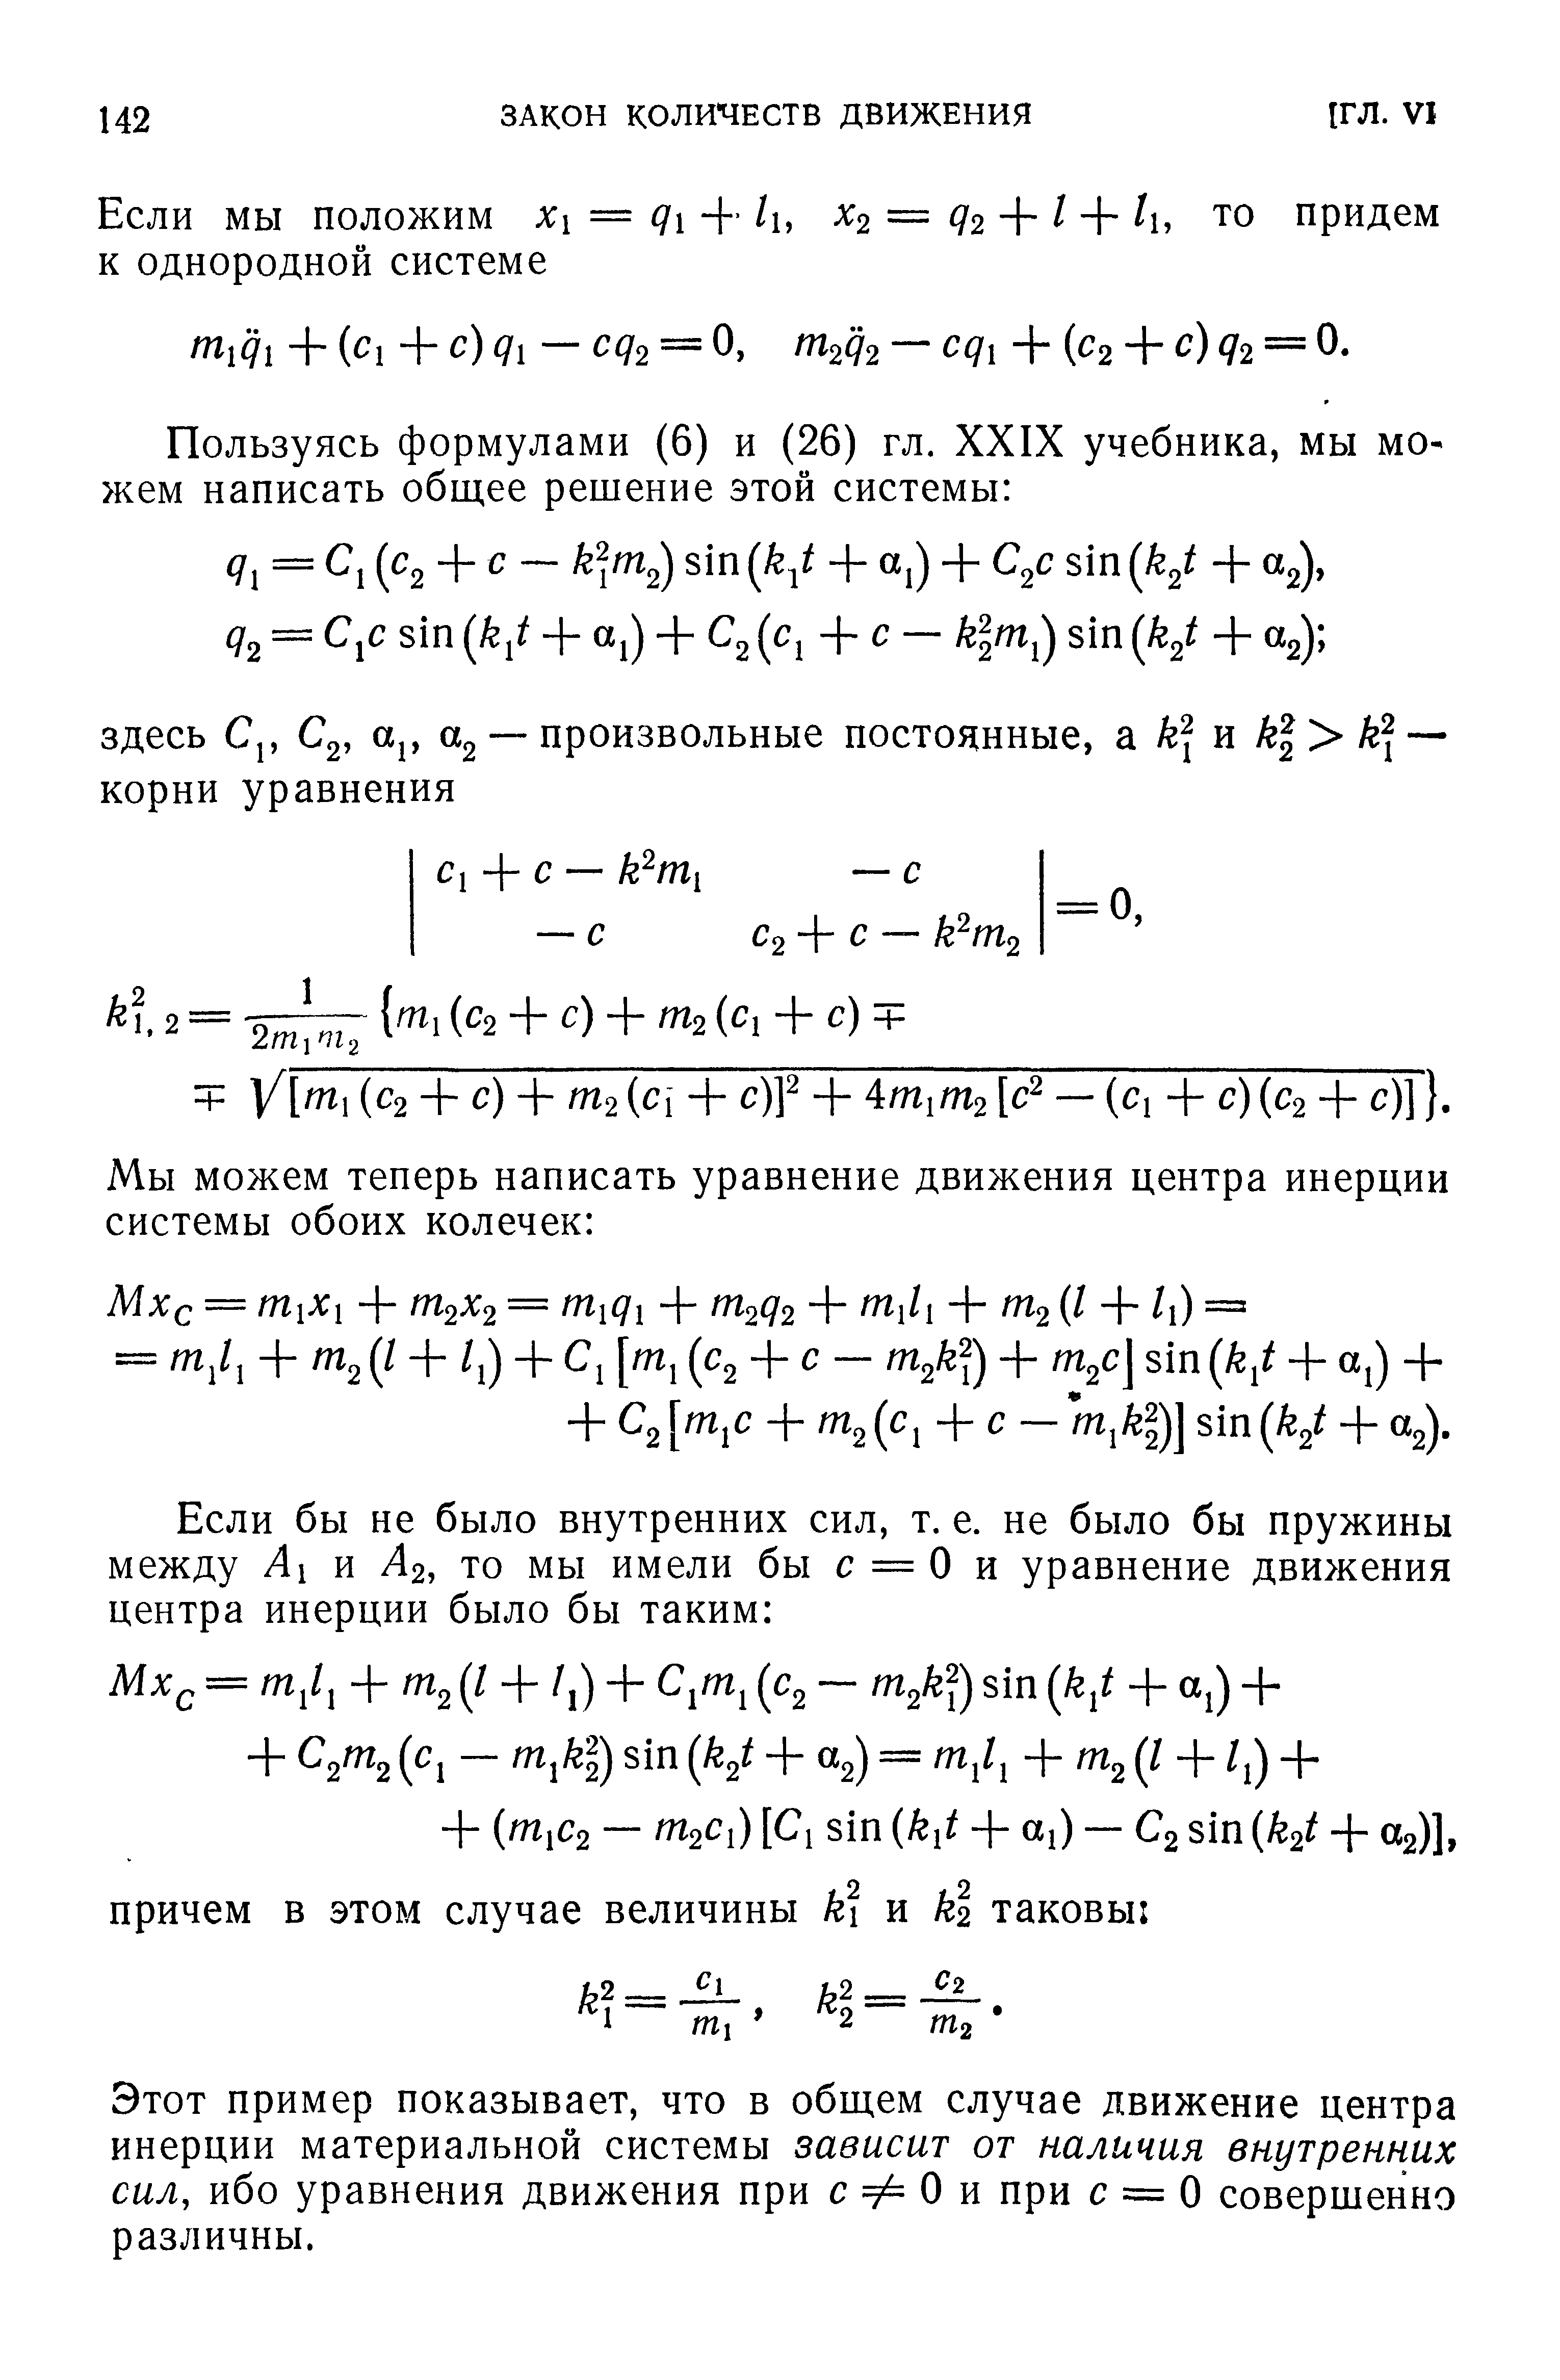 Этот пример показывает, что в общем случае движение центра инерции материальной системы зависит от наличия внутренних сил, ибо уравнения движения при с Ф О и при с = О совершенно различны.
